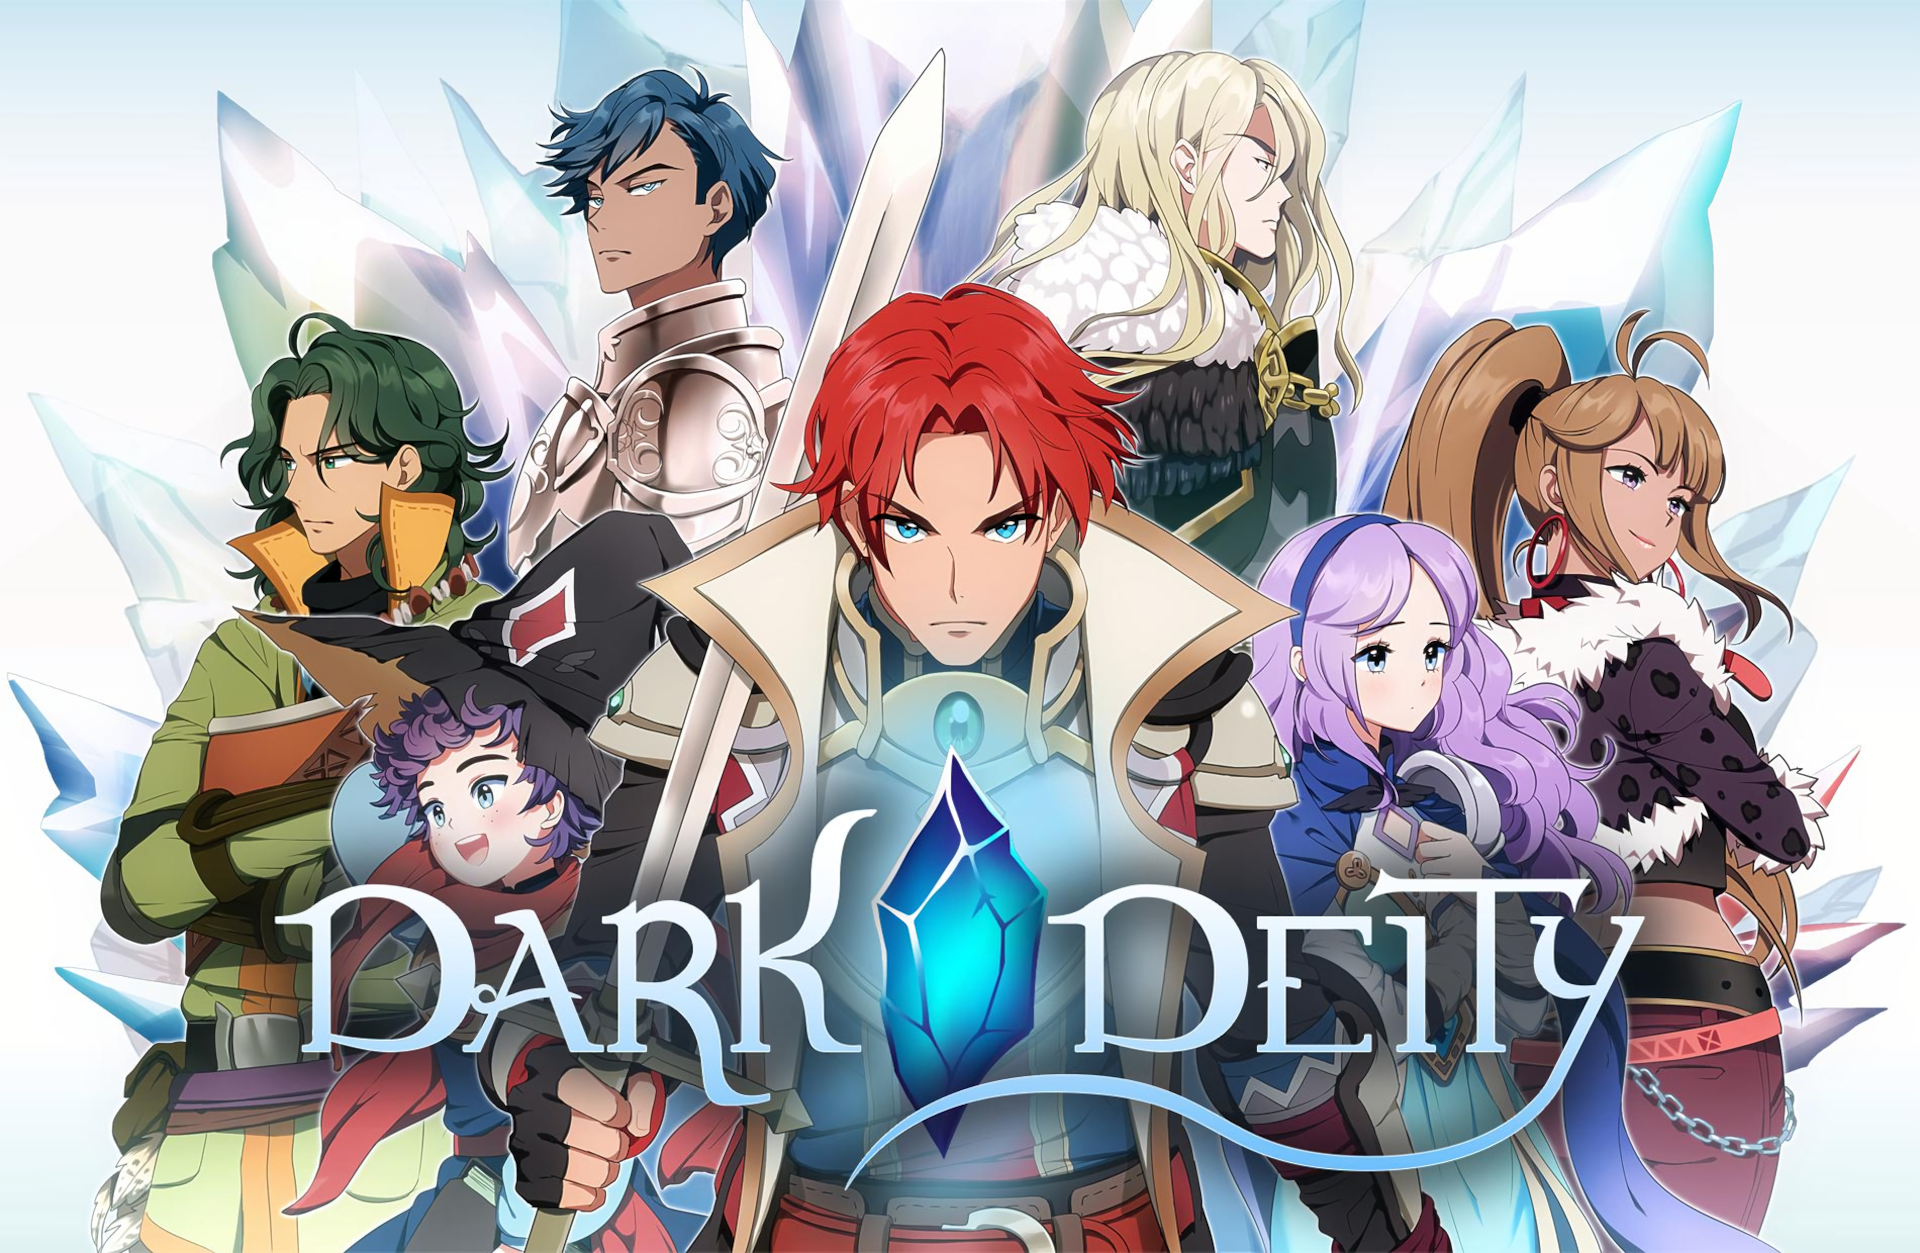 Video Game Dark Deity HD Wallpaper | Background Image